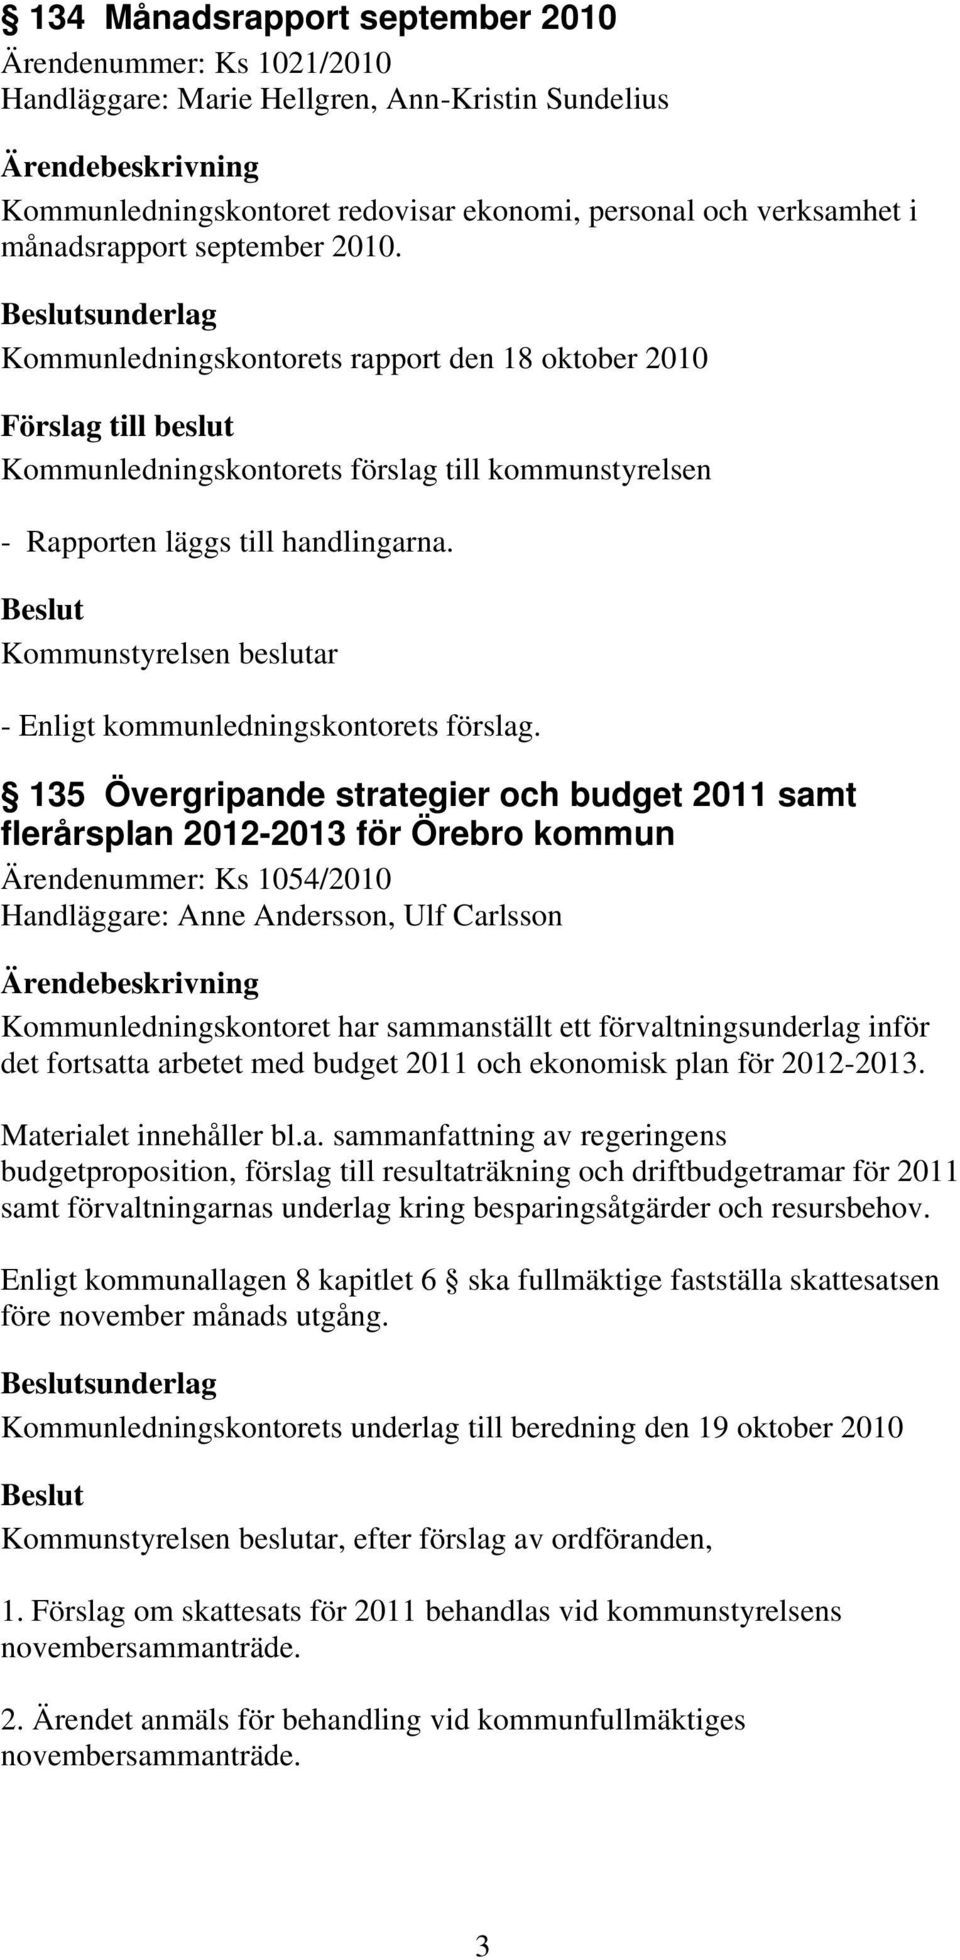 135 Övergripande strategier och budget 2011 samt flerårsplan 2012-2013 för Örebro kommun Ärendenummer: Ks 1054/2010 Handläggare: Anne Andersson, Ulf Carlsson Kommunledningskontoret har sammanställt